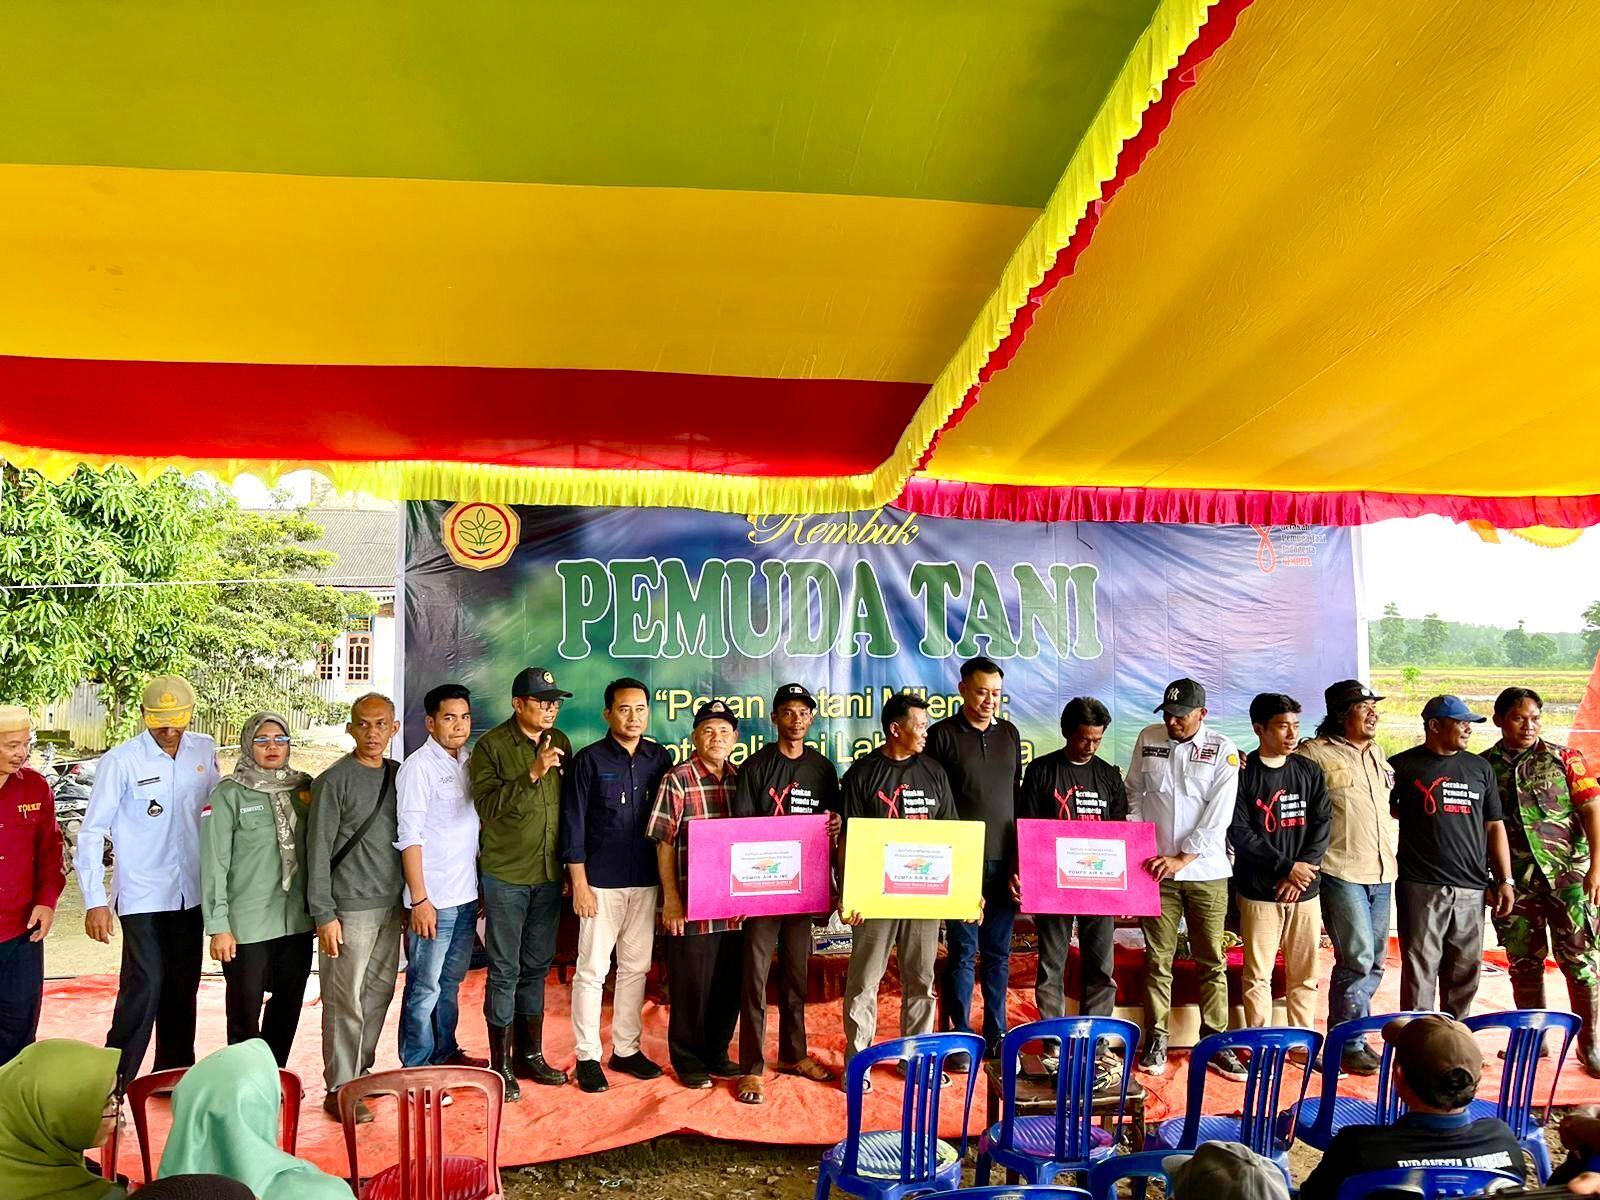 Penyerahan bantuan dari Kementrian Pertanian kepada pemuda tani di Banyuasin, Sumatera Selatan